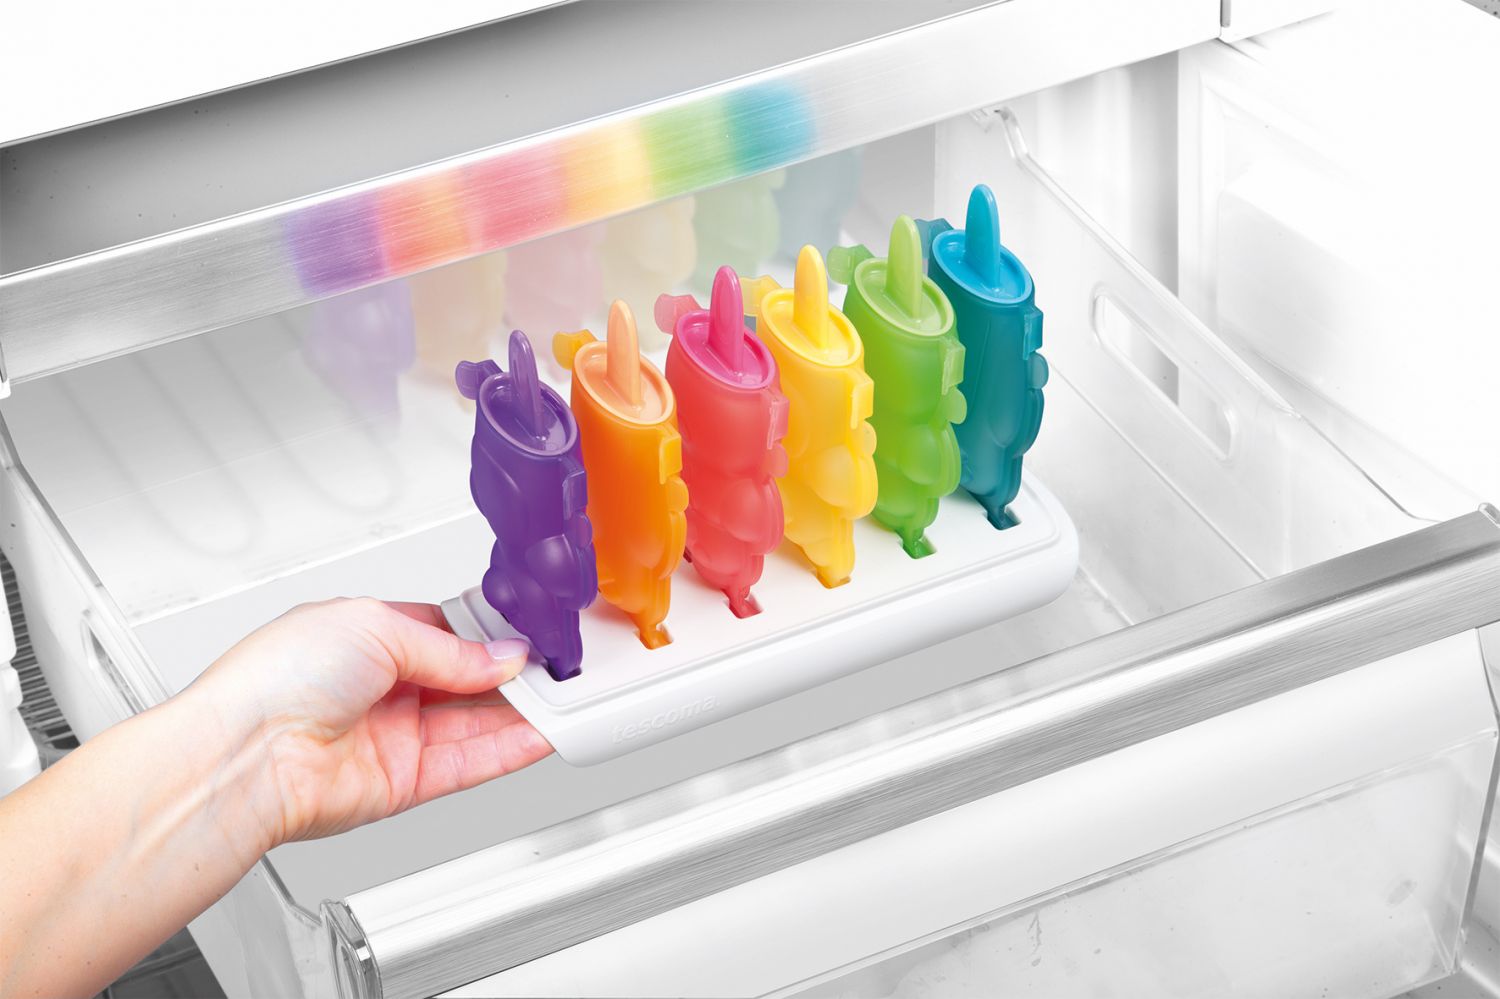 Формочки для домашнего мороженого из серии Tescoma BAMBINI 2014 года: иллюстрация процесса помещения в морозилку